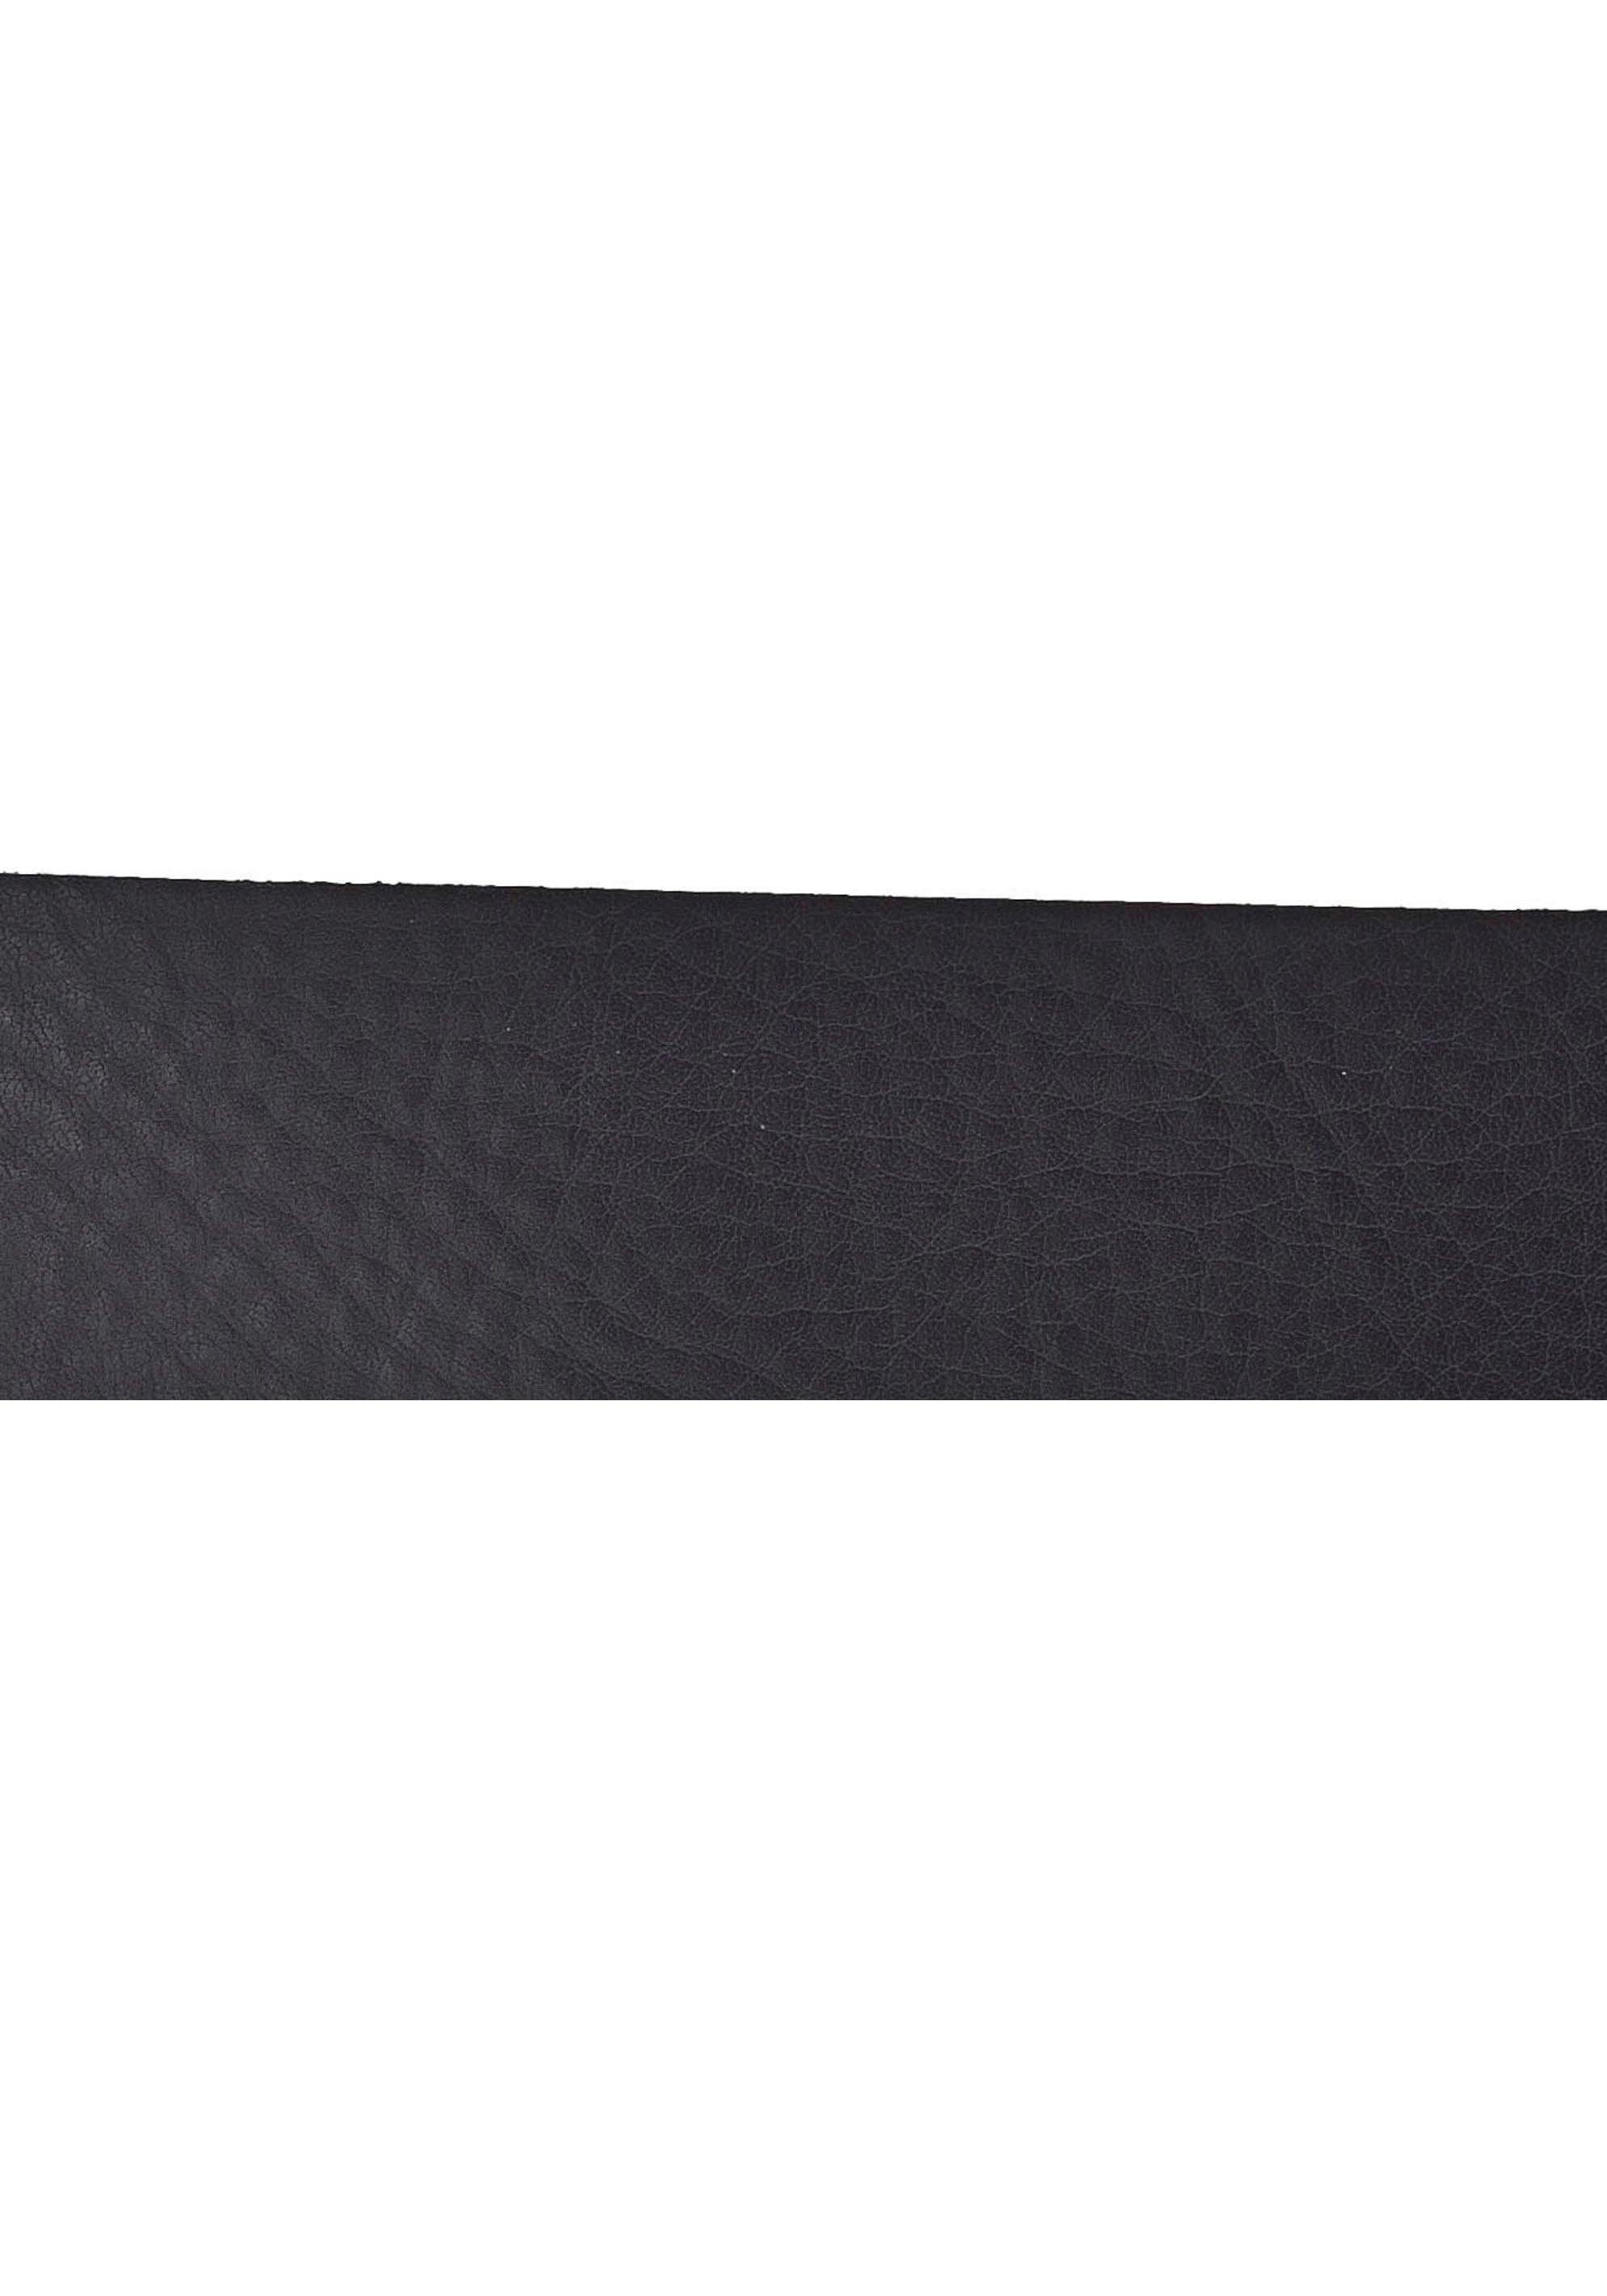 Weiches Vanzetti schwarz Leder leichter Ledergürtel Narbenstruktur mit